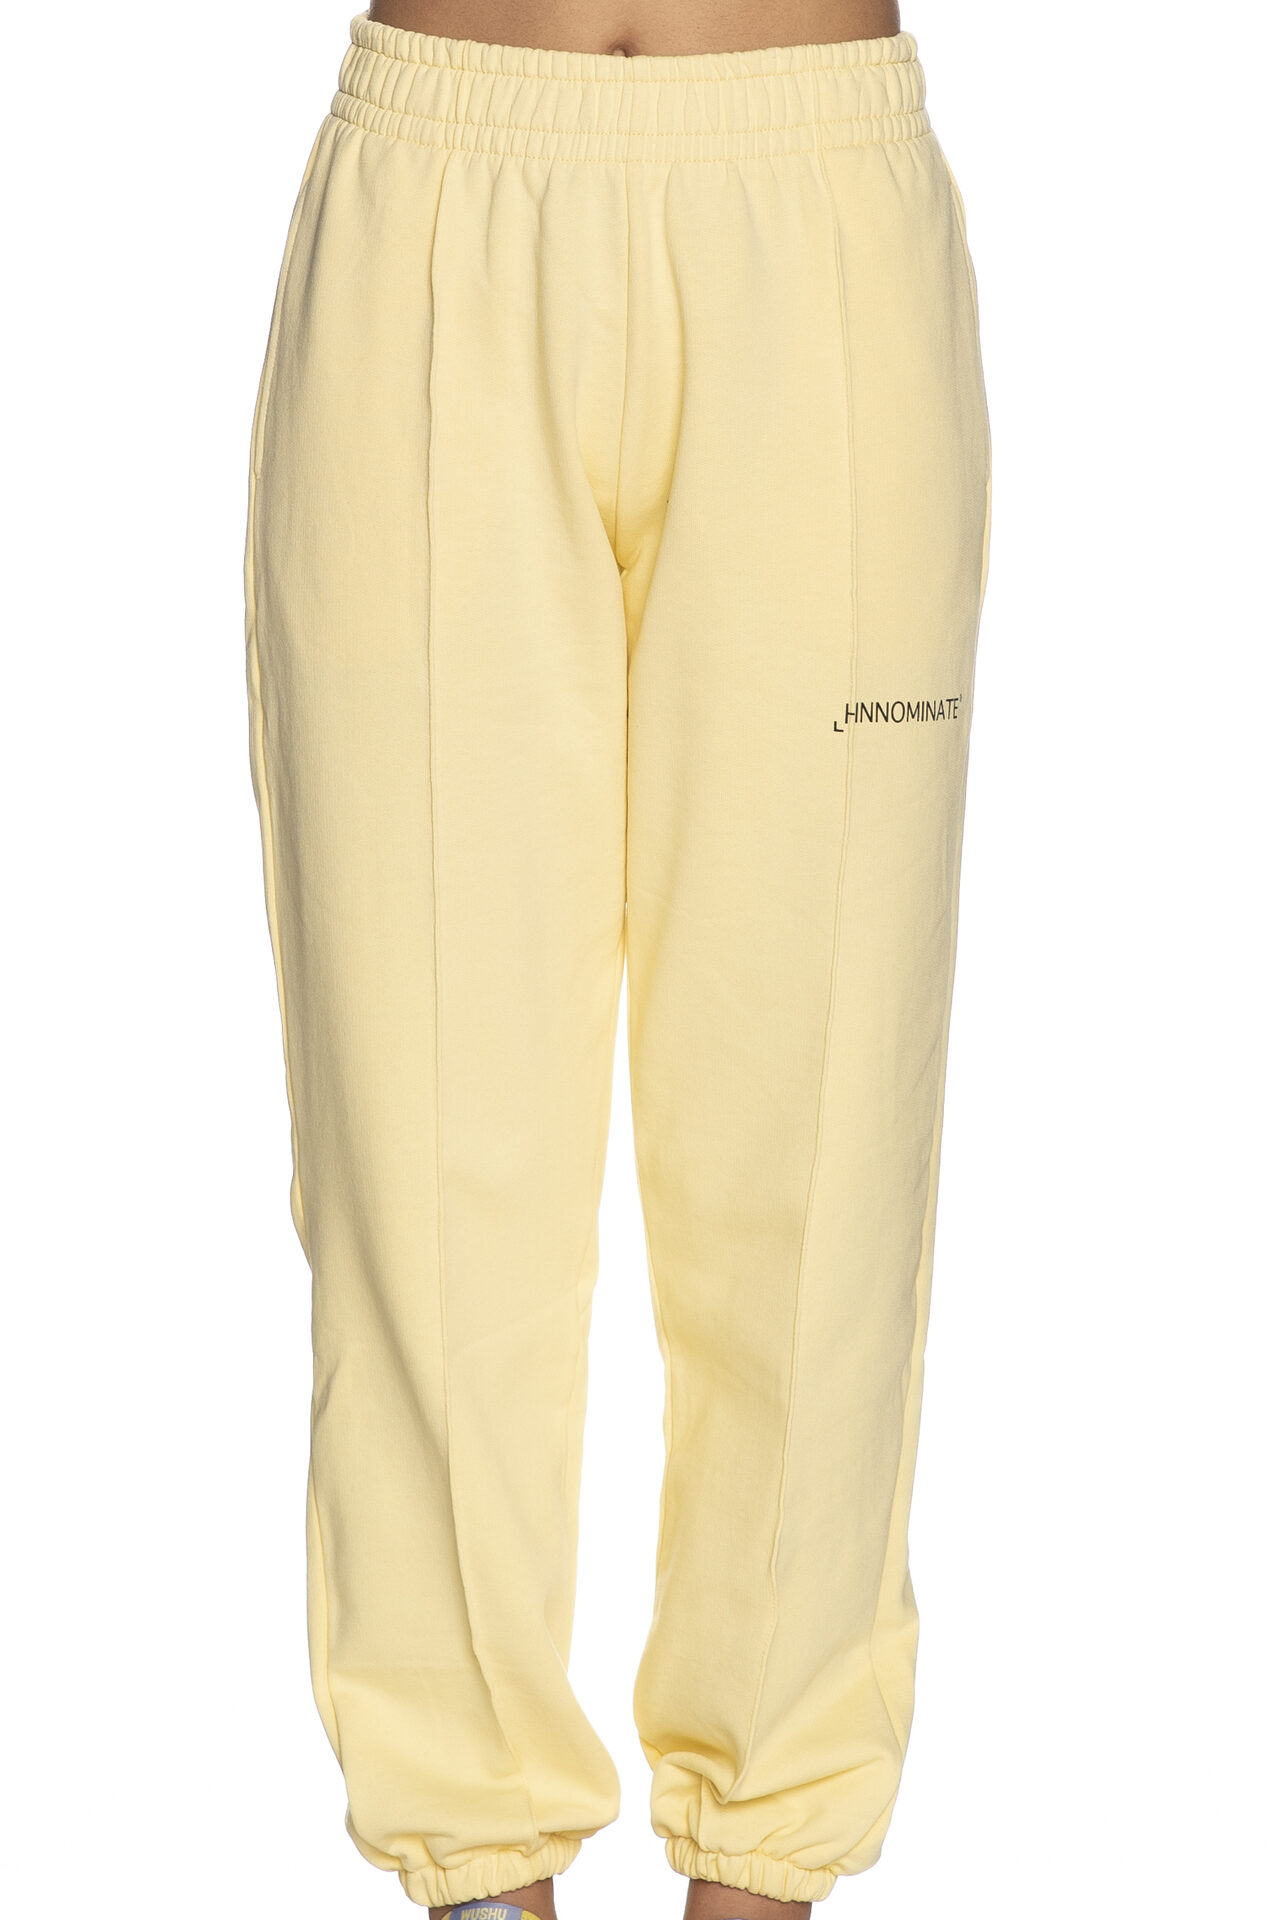 Pantalone tuta Hinnominate 150 collezione Rodriguez da donna giallo crema